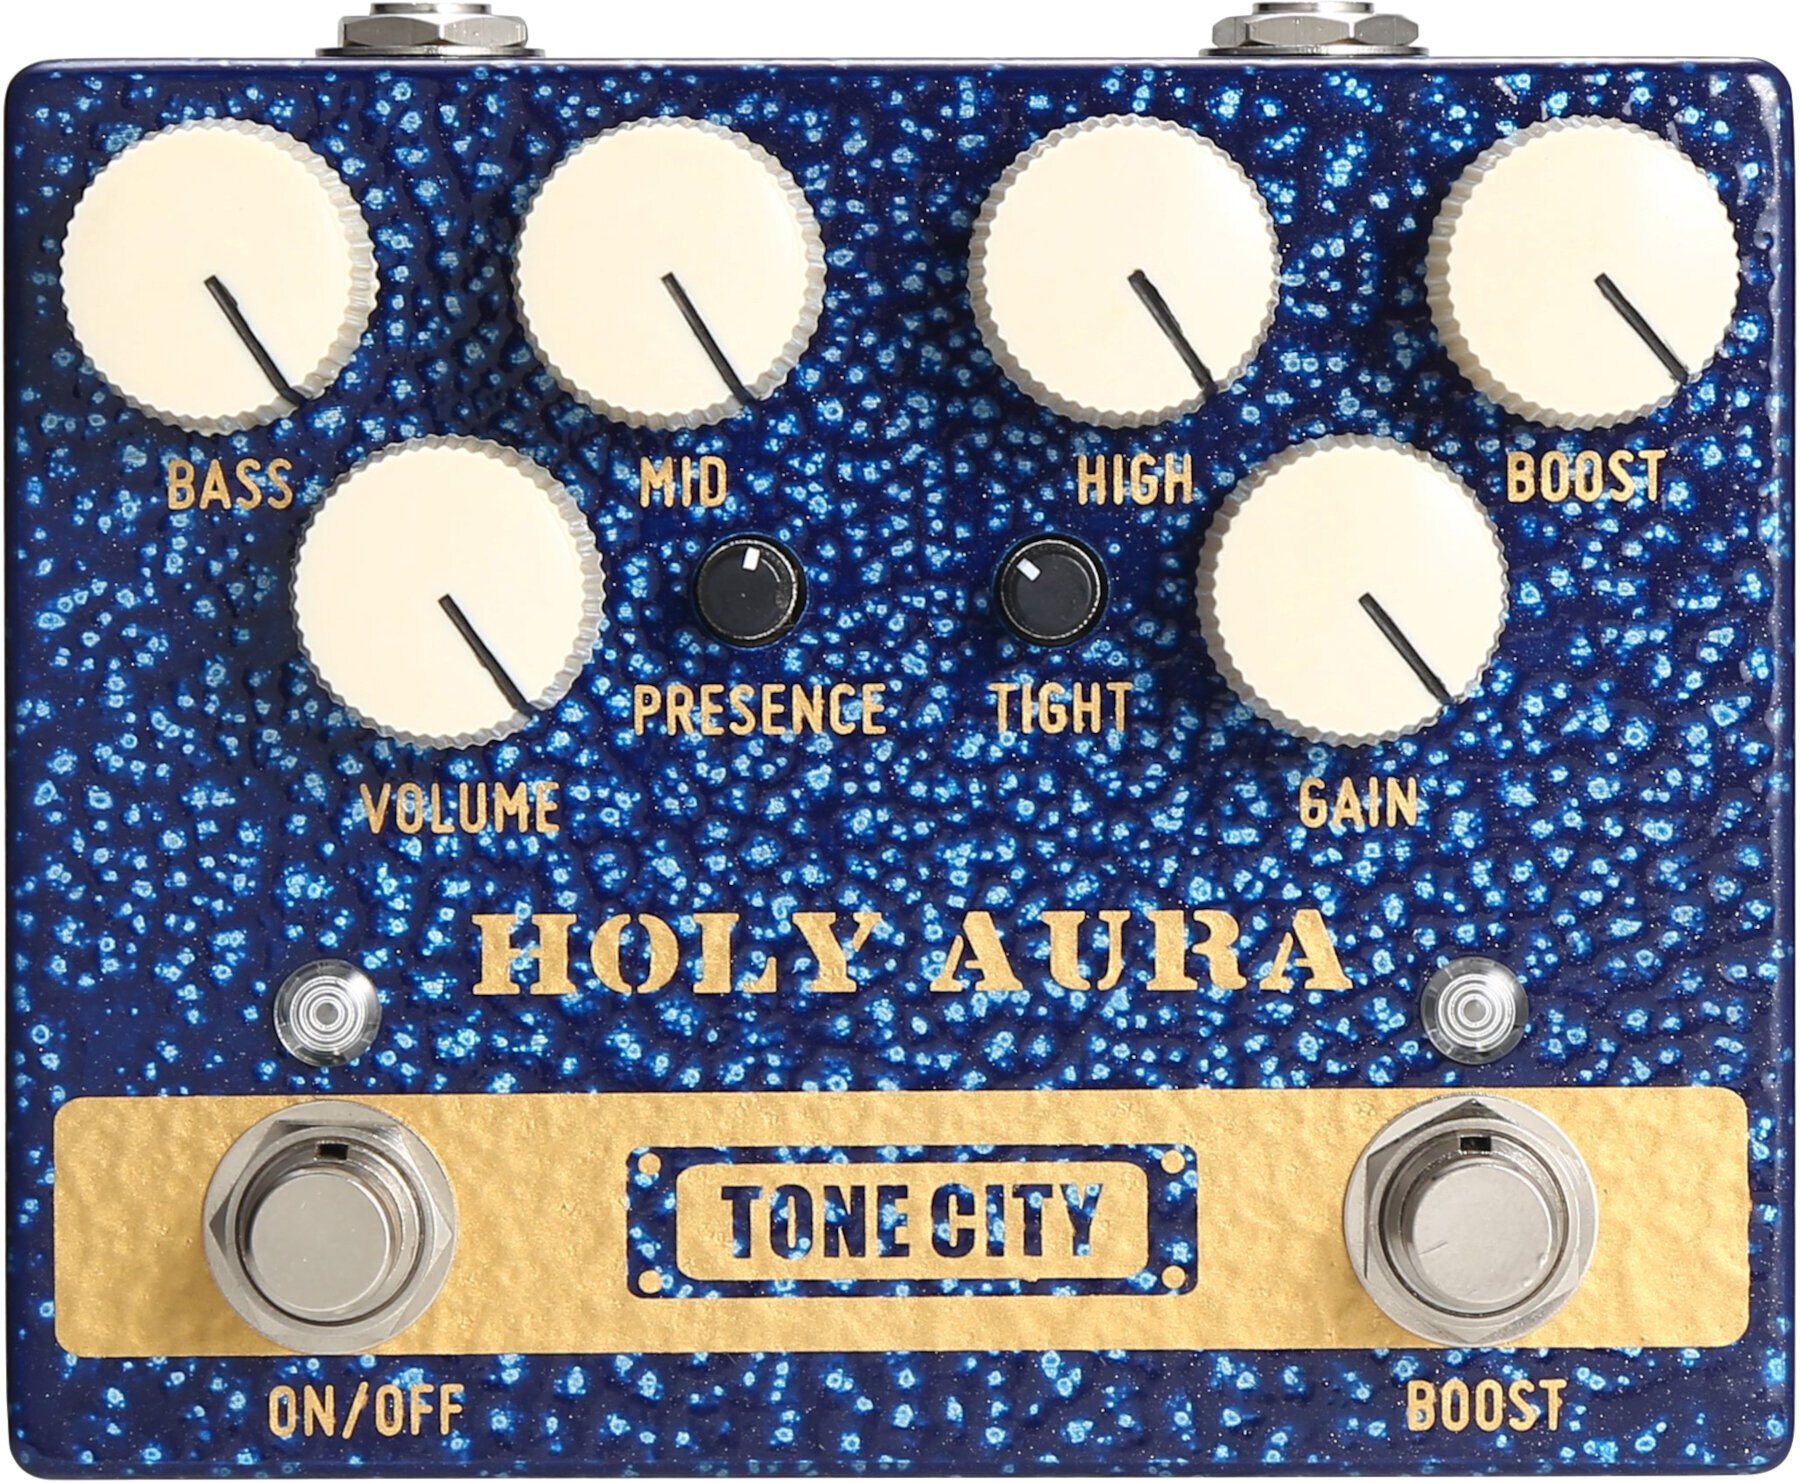 Tone City Holy Aura Tone City